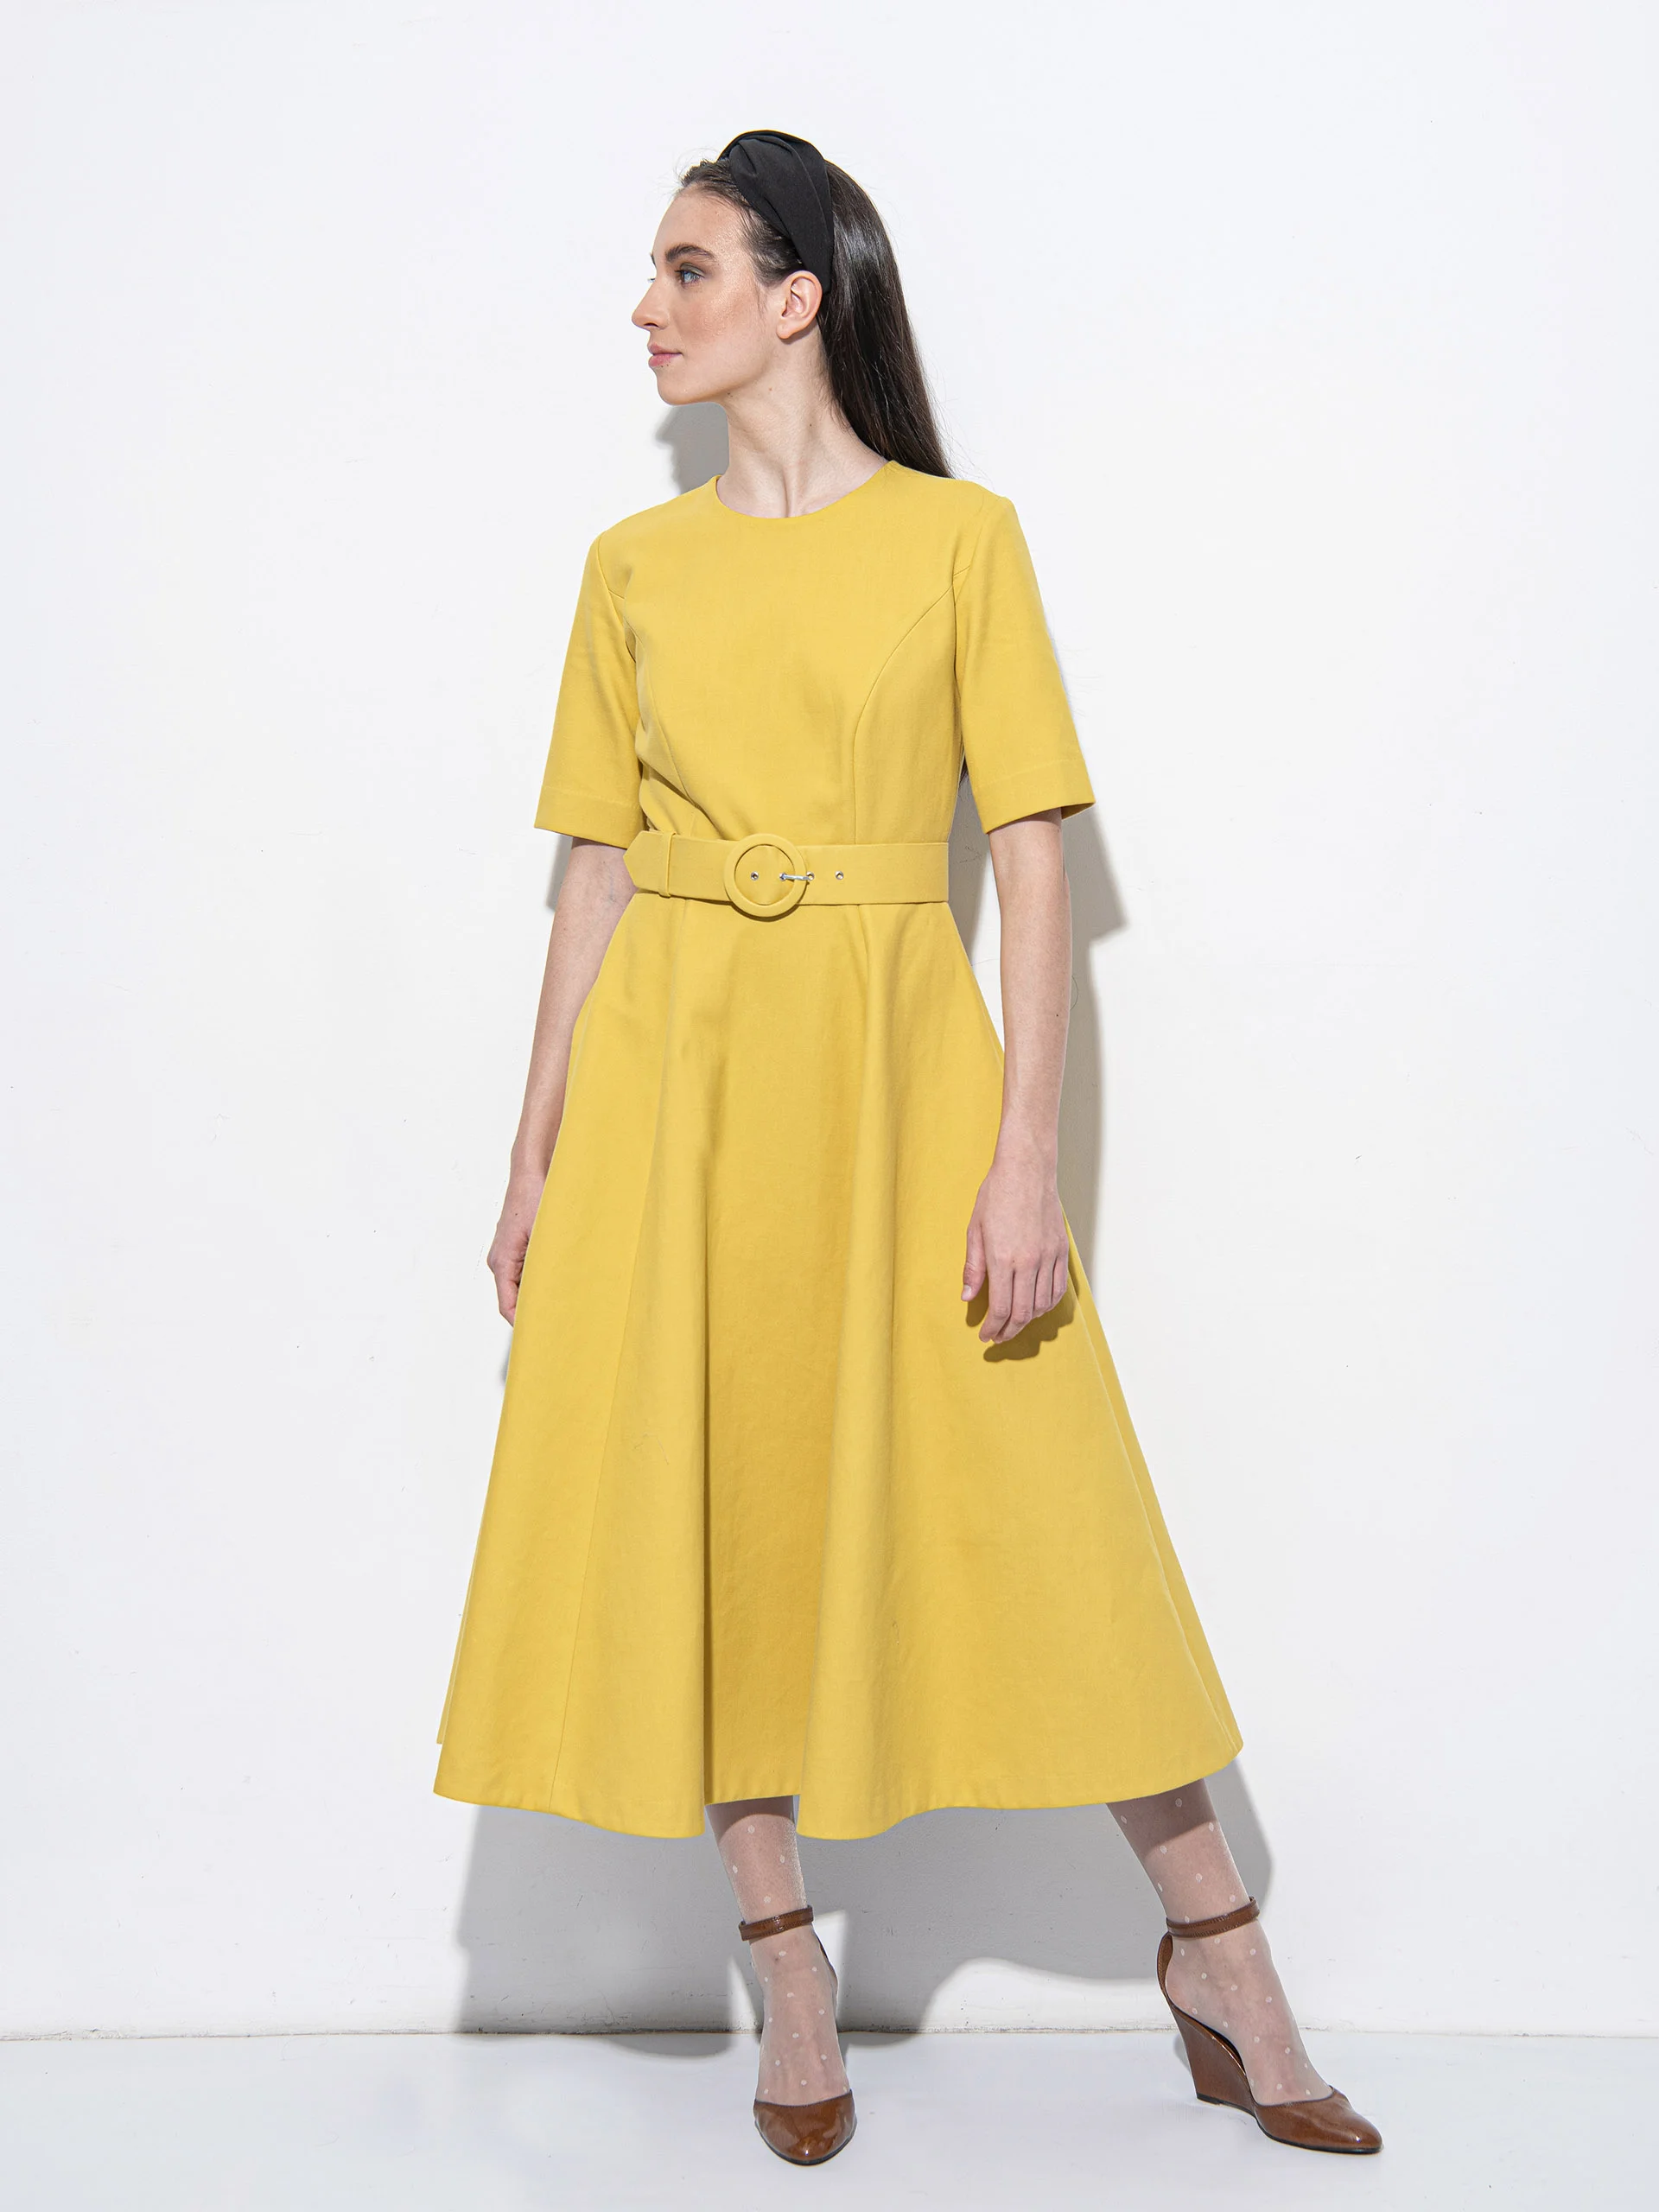 Mustard yellow dress with a belt • Sassa Björg